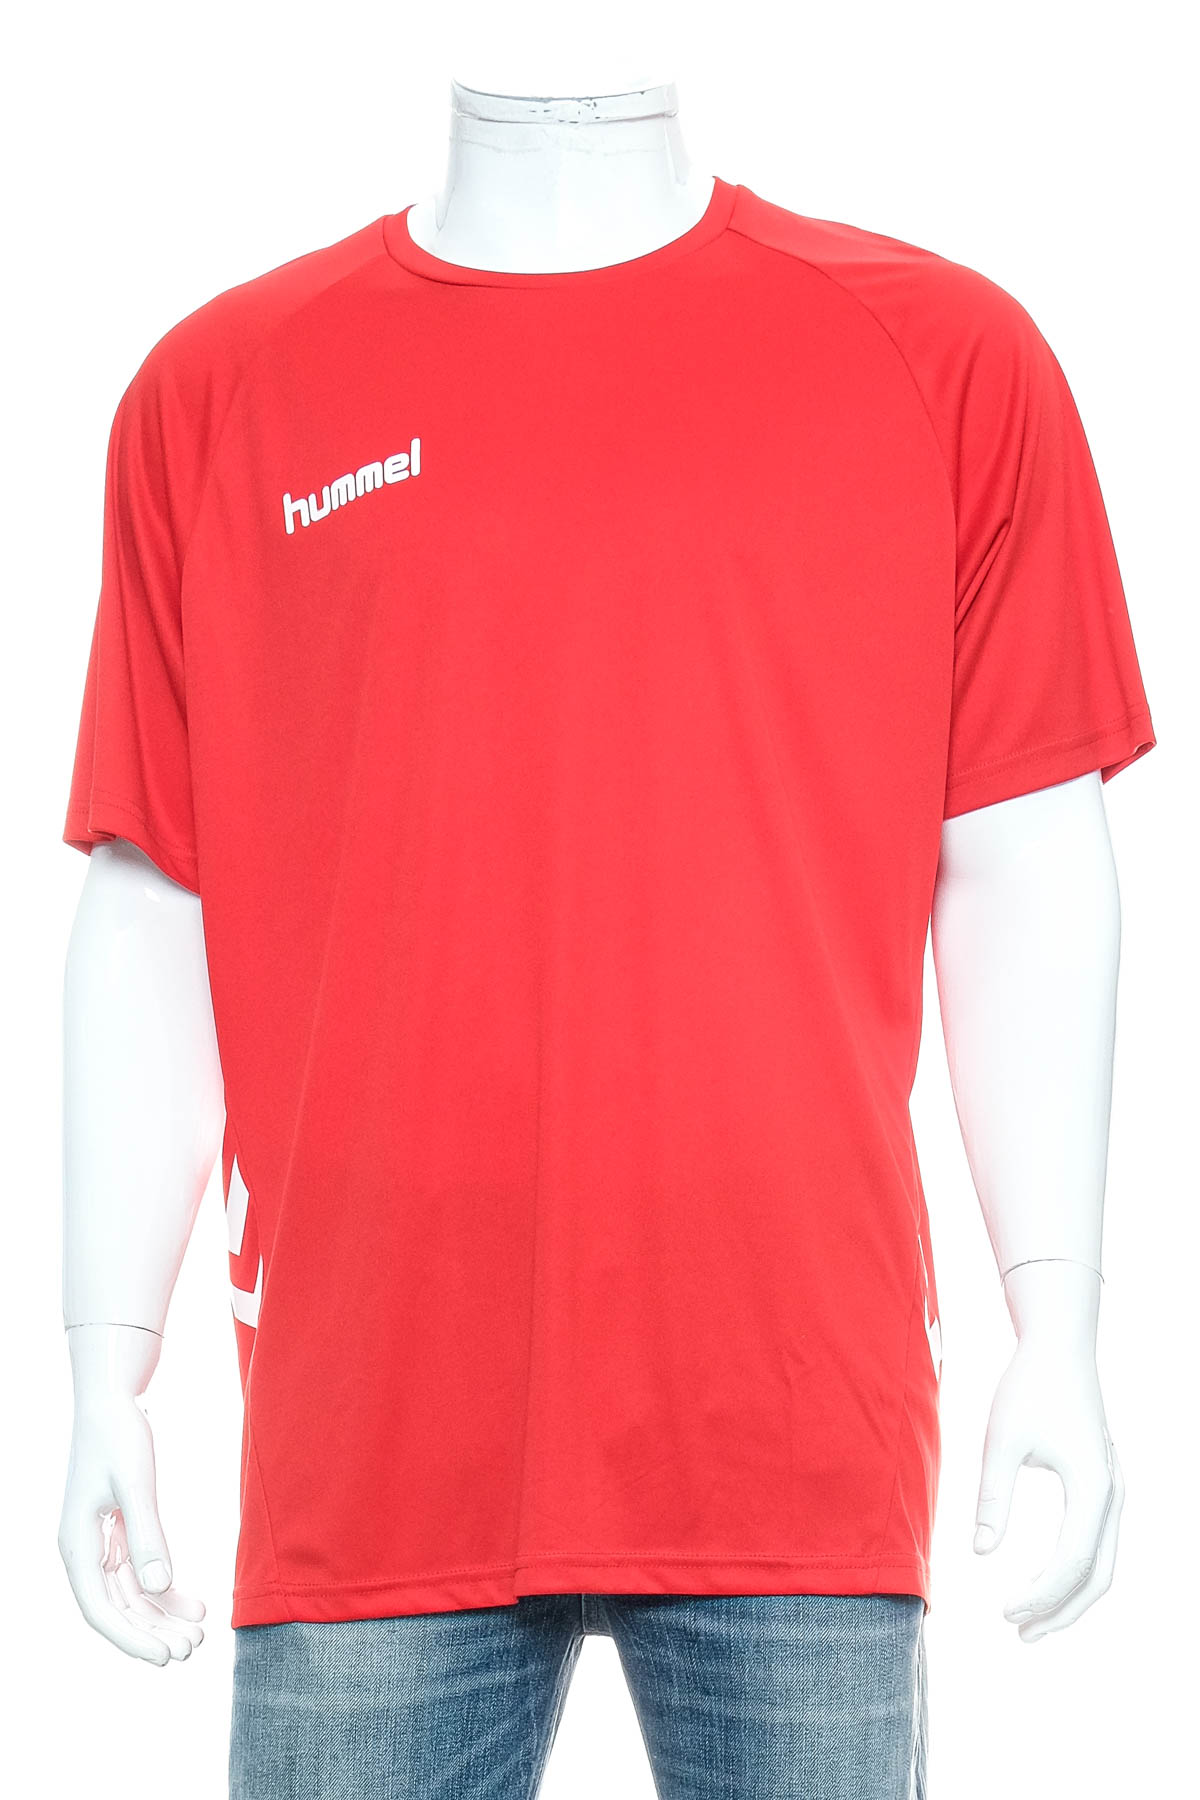 Αντρική μπλούζα - Hummel - 0